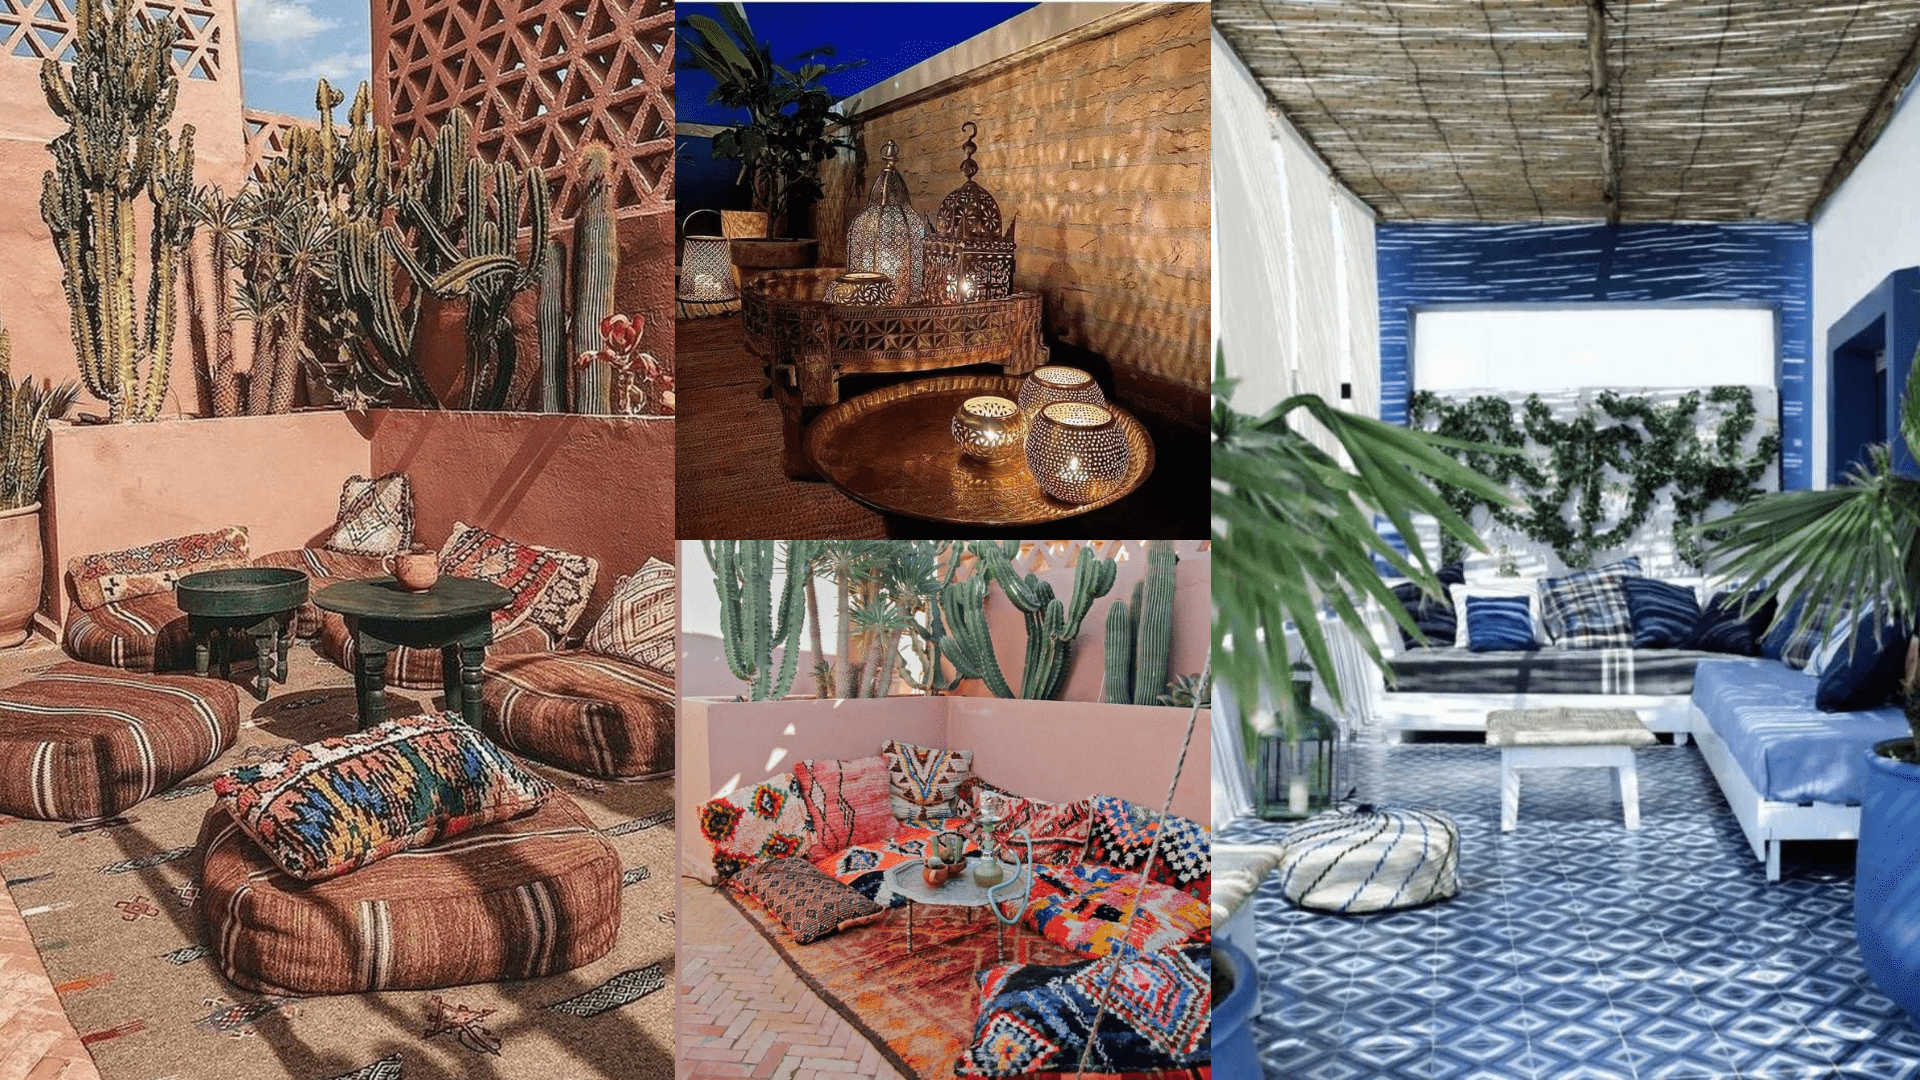 Salon de jardin marocain : comment l’aménager ?